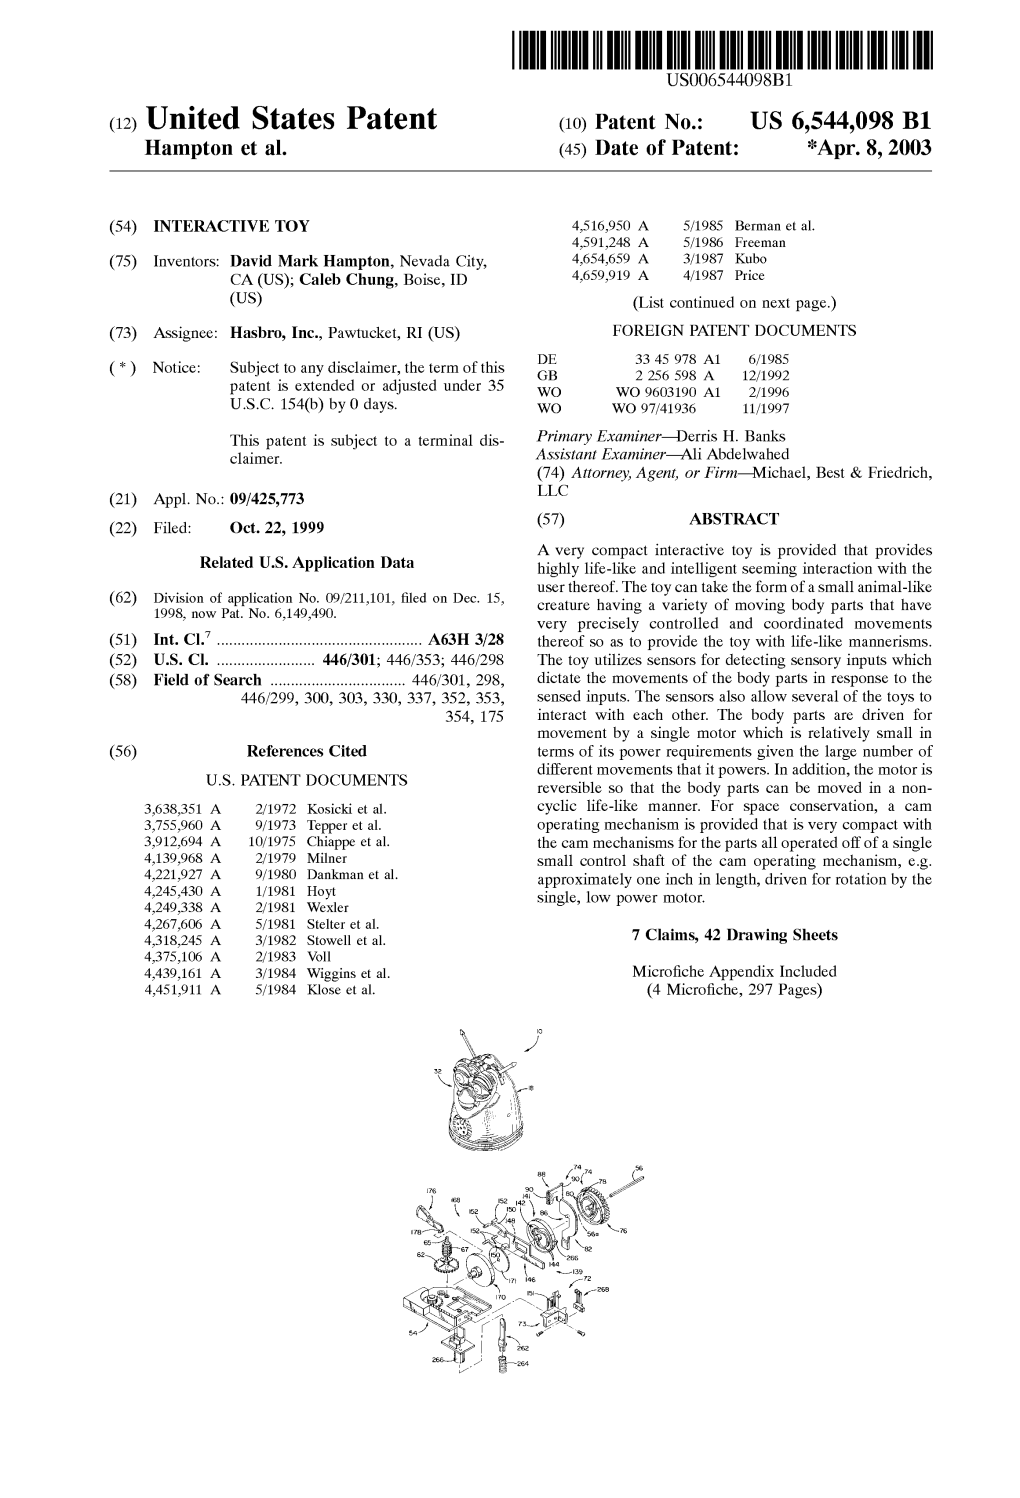 (12) United States Patent (10) Patent No.: US 6,544,098 B1 Hampton Et Al